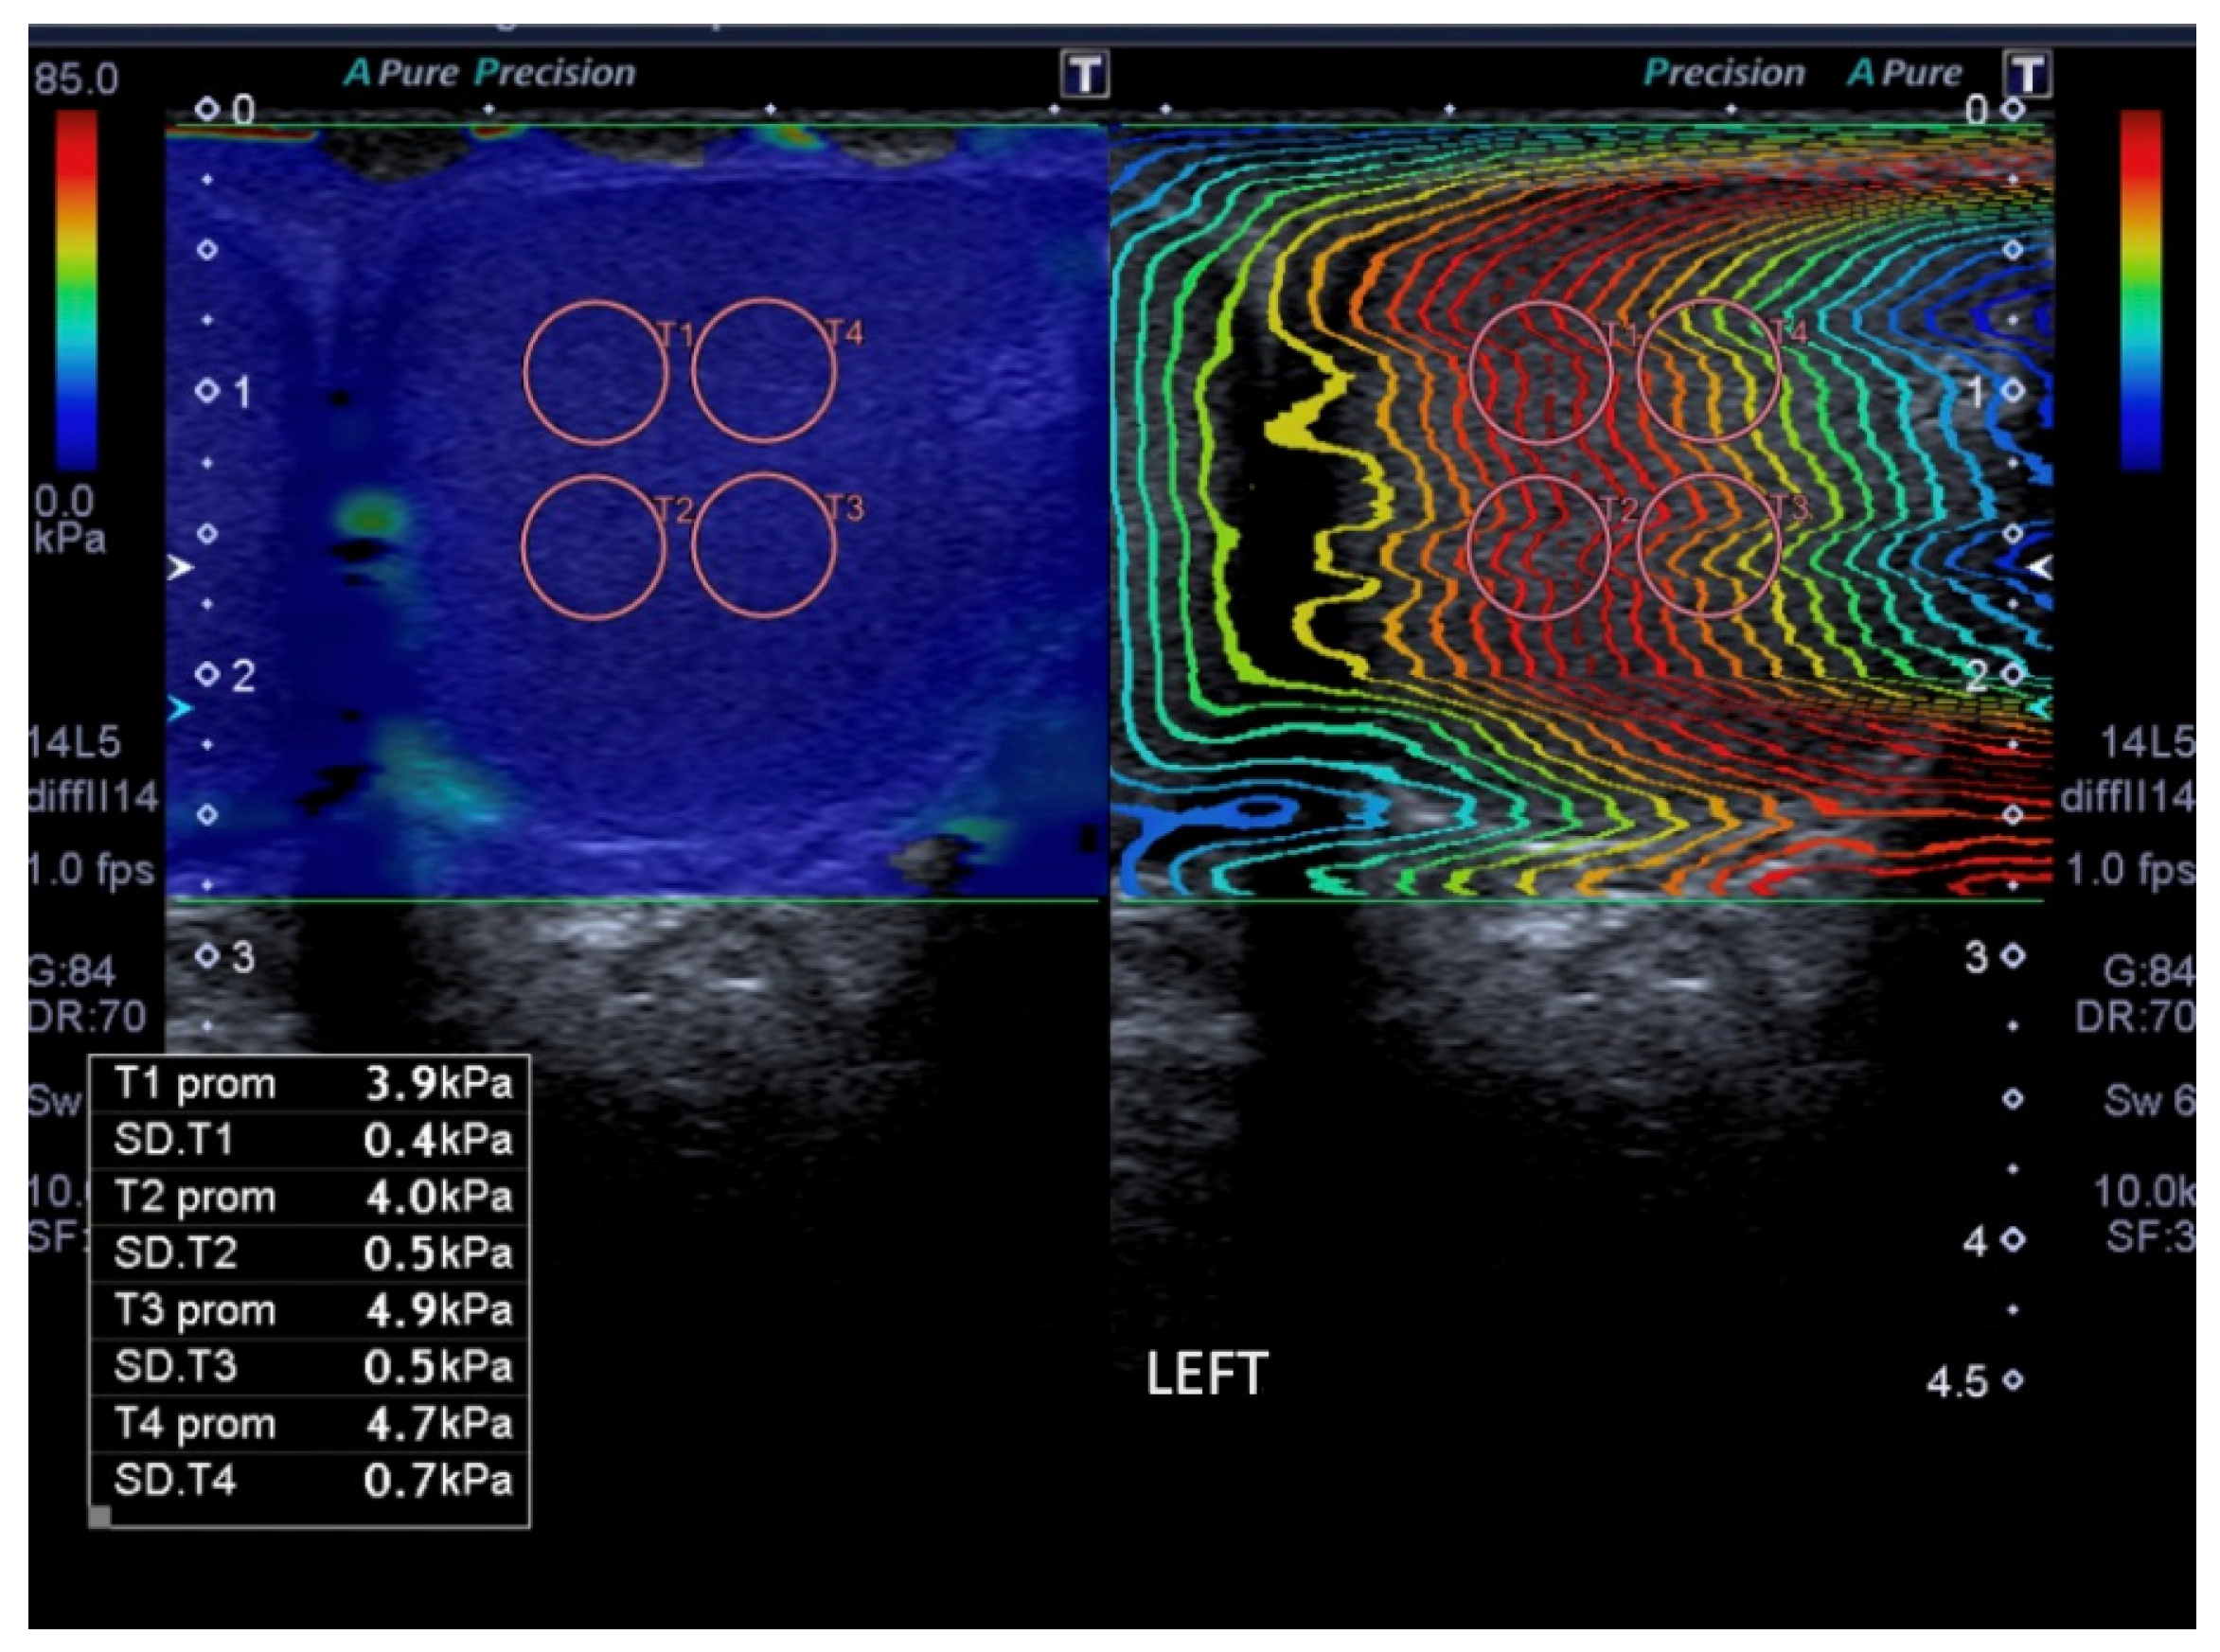 varicocele ultrasound criteria